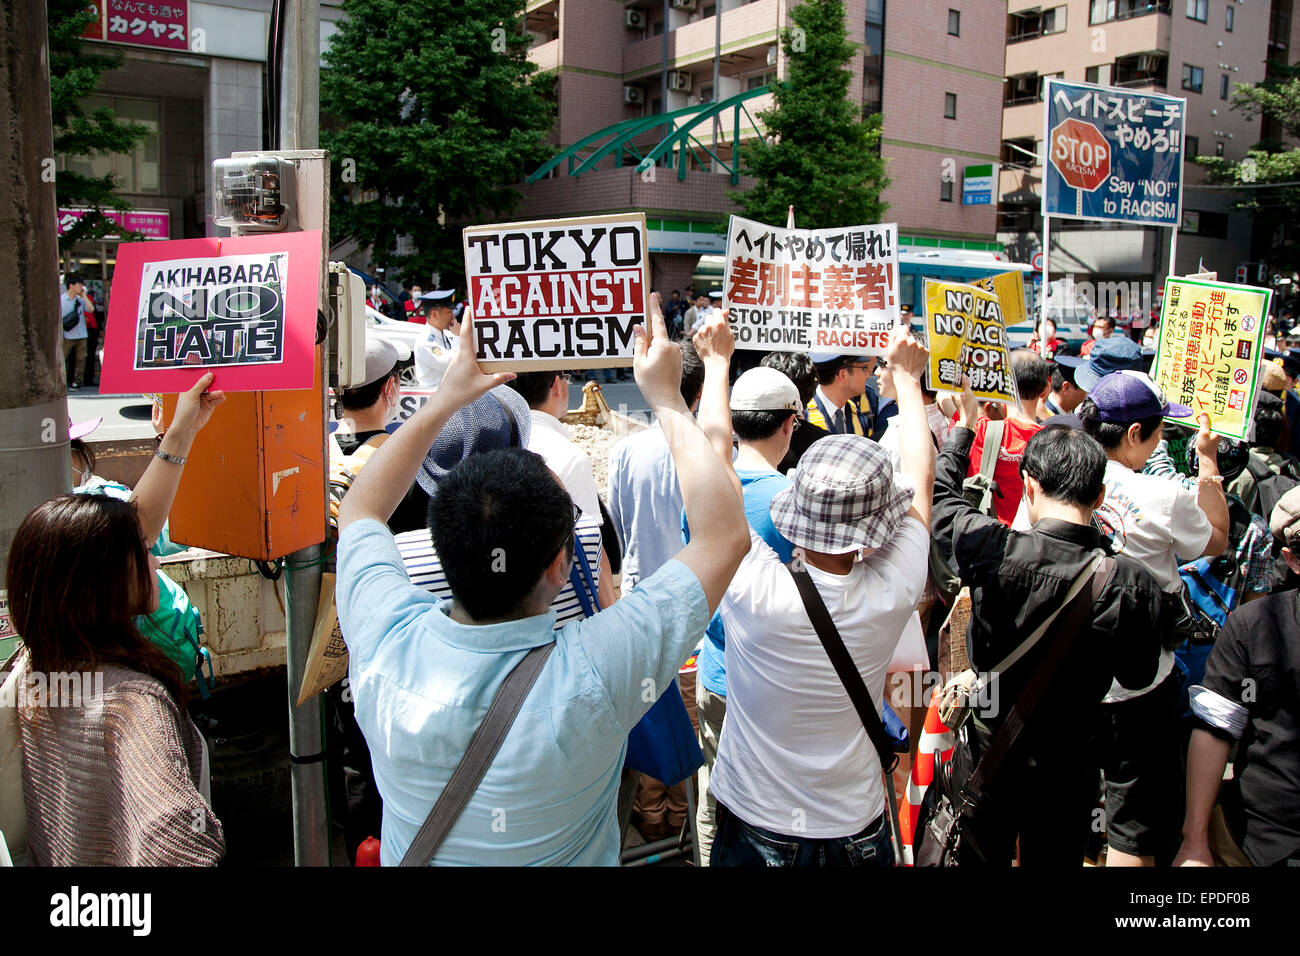 Tokyo, Giappone. Il 17 maggio 2015. Anti-razzisti scontro con i membri della NPO Houjin Gaikokujin Hanzai Tsuiho Annulla (Movimento per eliminare i reati commessi da stranieri) nel distretto di Akihabara, 17 maggio 2015, Tokyo, Giappone. Più di un centinaio di anti-razzisti hanno protestato contro un rally dall'ala destra NPO tenutasi il 17 maggio intorno all'Akihabara strade. Credito: Aflo Co. Ltd./Alamy Live News Foto Stock